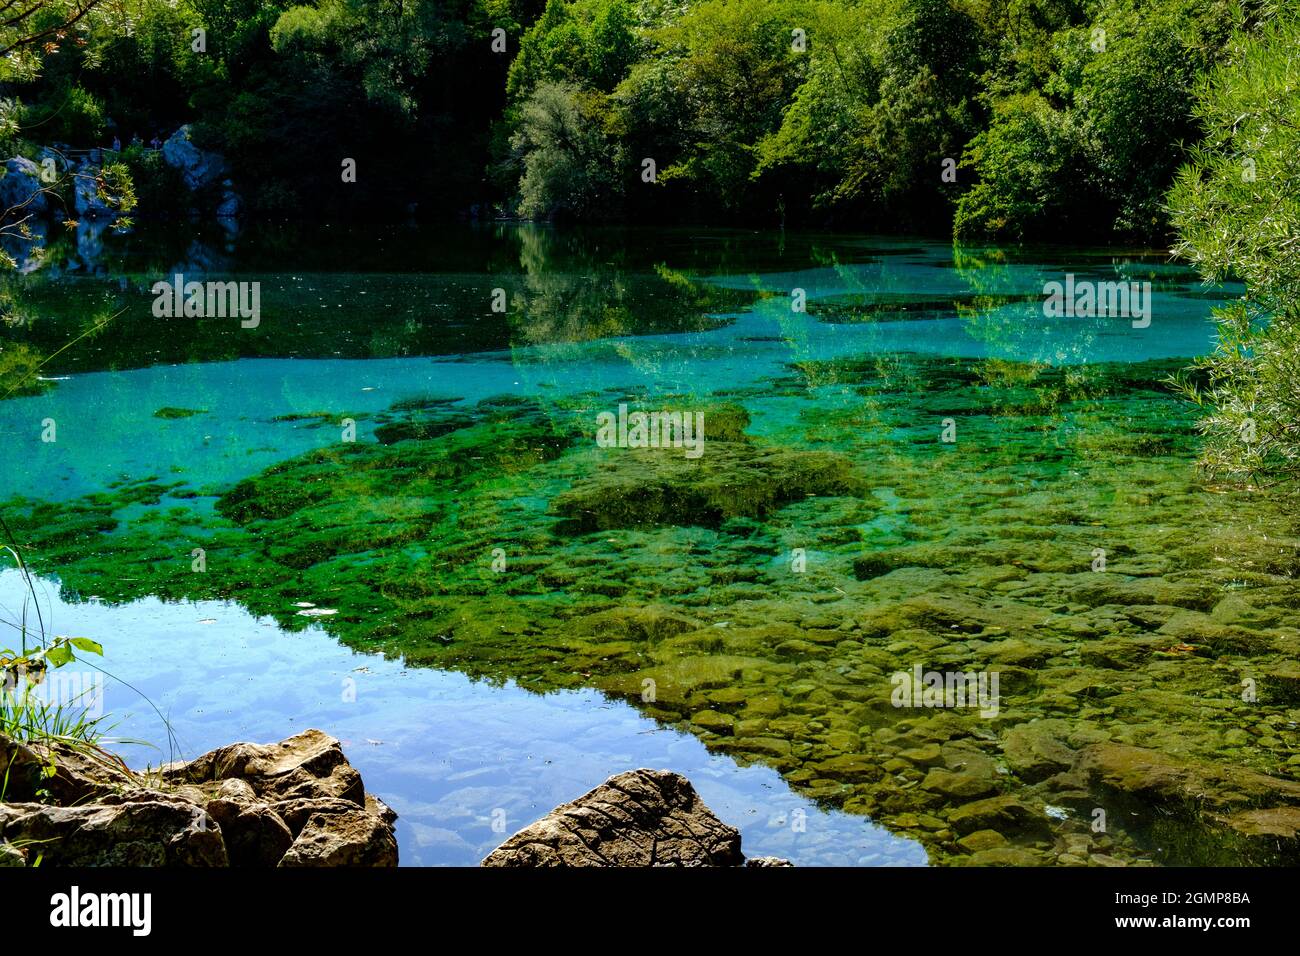 Amazing Cornino Lake Natural Reservation, Friuli, Italy Stock Photo